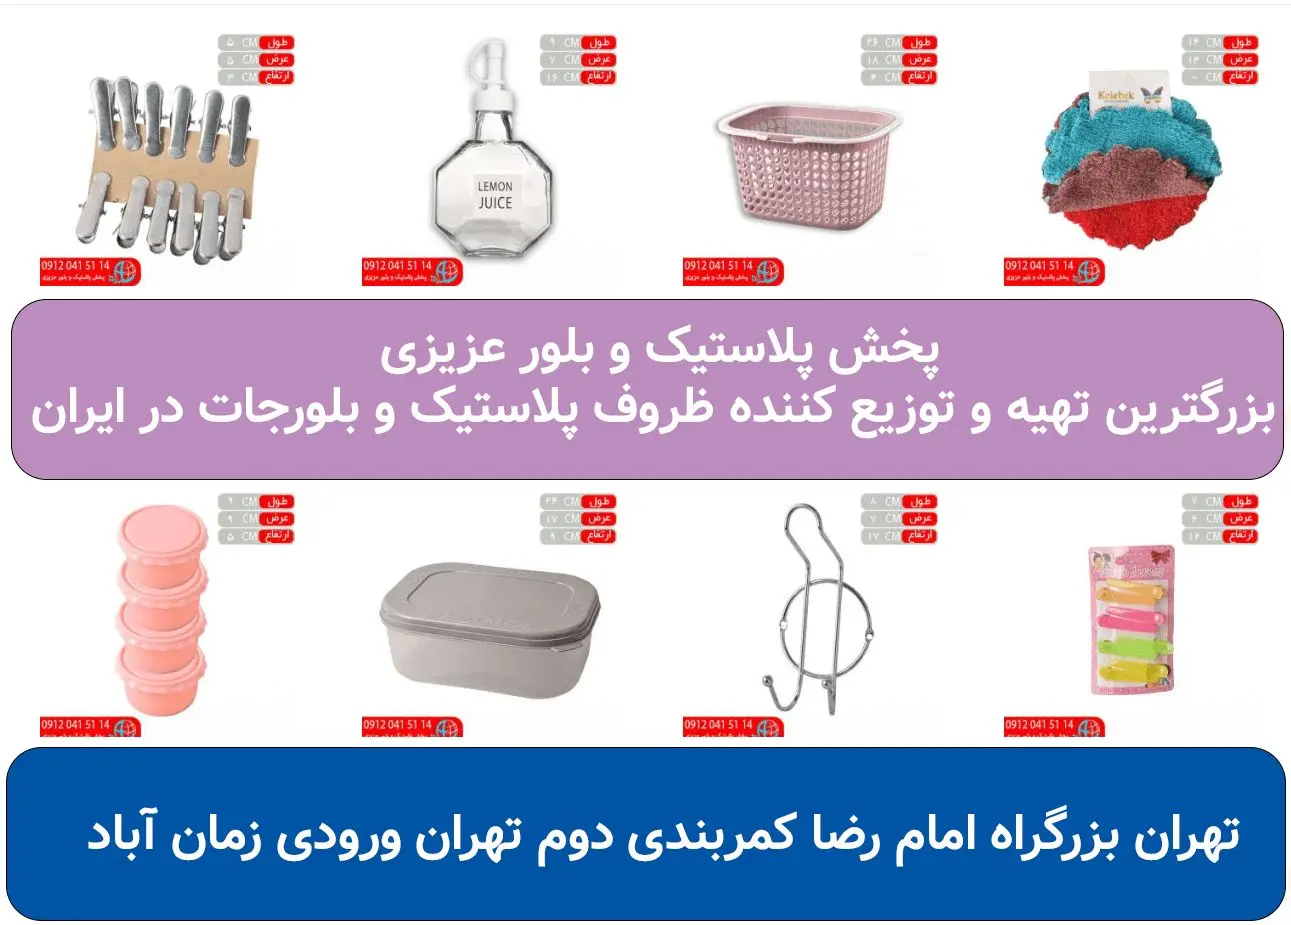 مرکز پخش عمده ظروف پلاستیک حراجی 20 فروش در تهران، کجاست؟